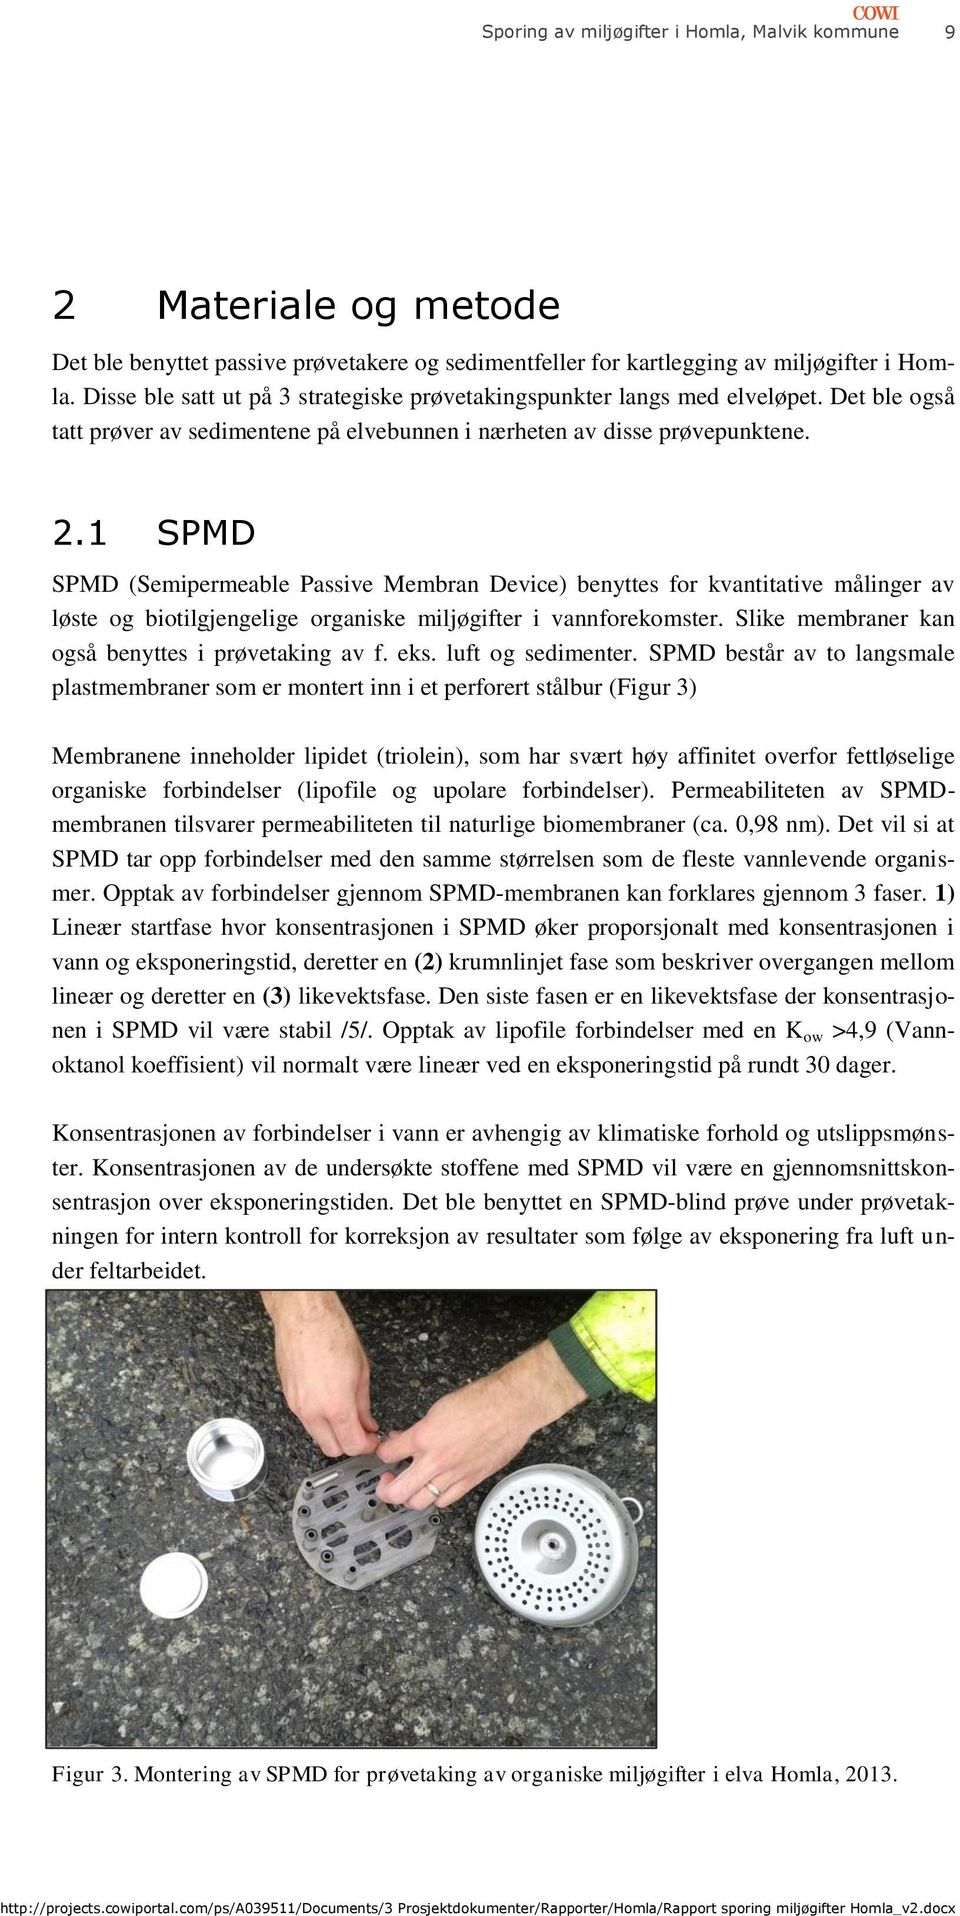 1 SPMD SPMD (Semipermeable Passive Membran Device) benyttes for kvantitative målinger av løste og biotilgjengelige organiske miljøgifter i vannforekomster.